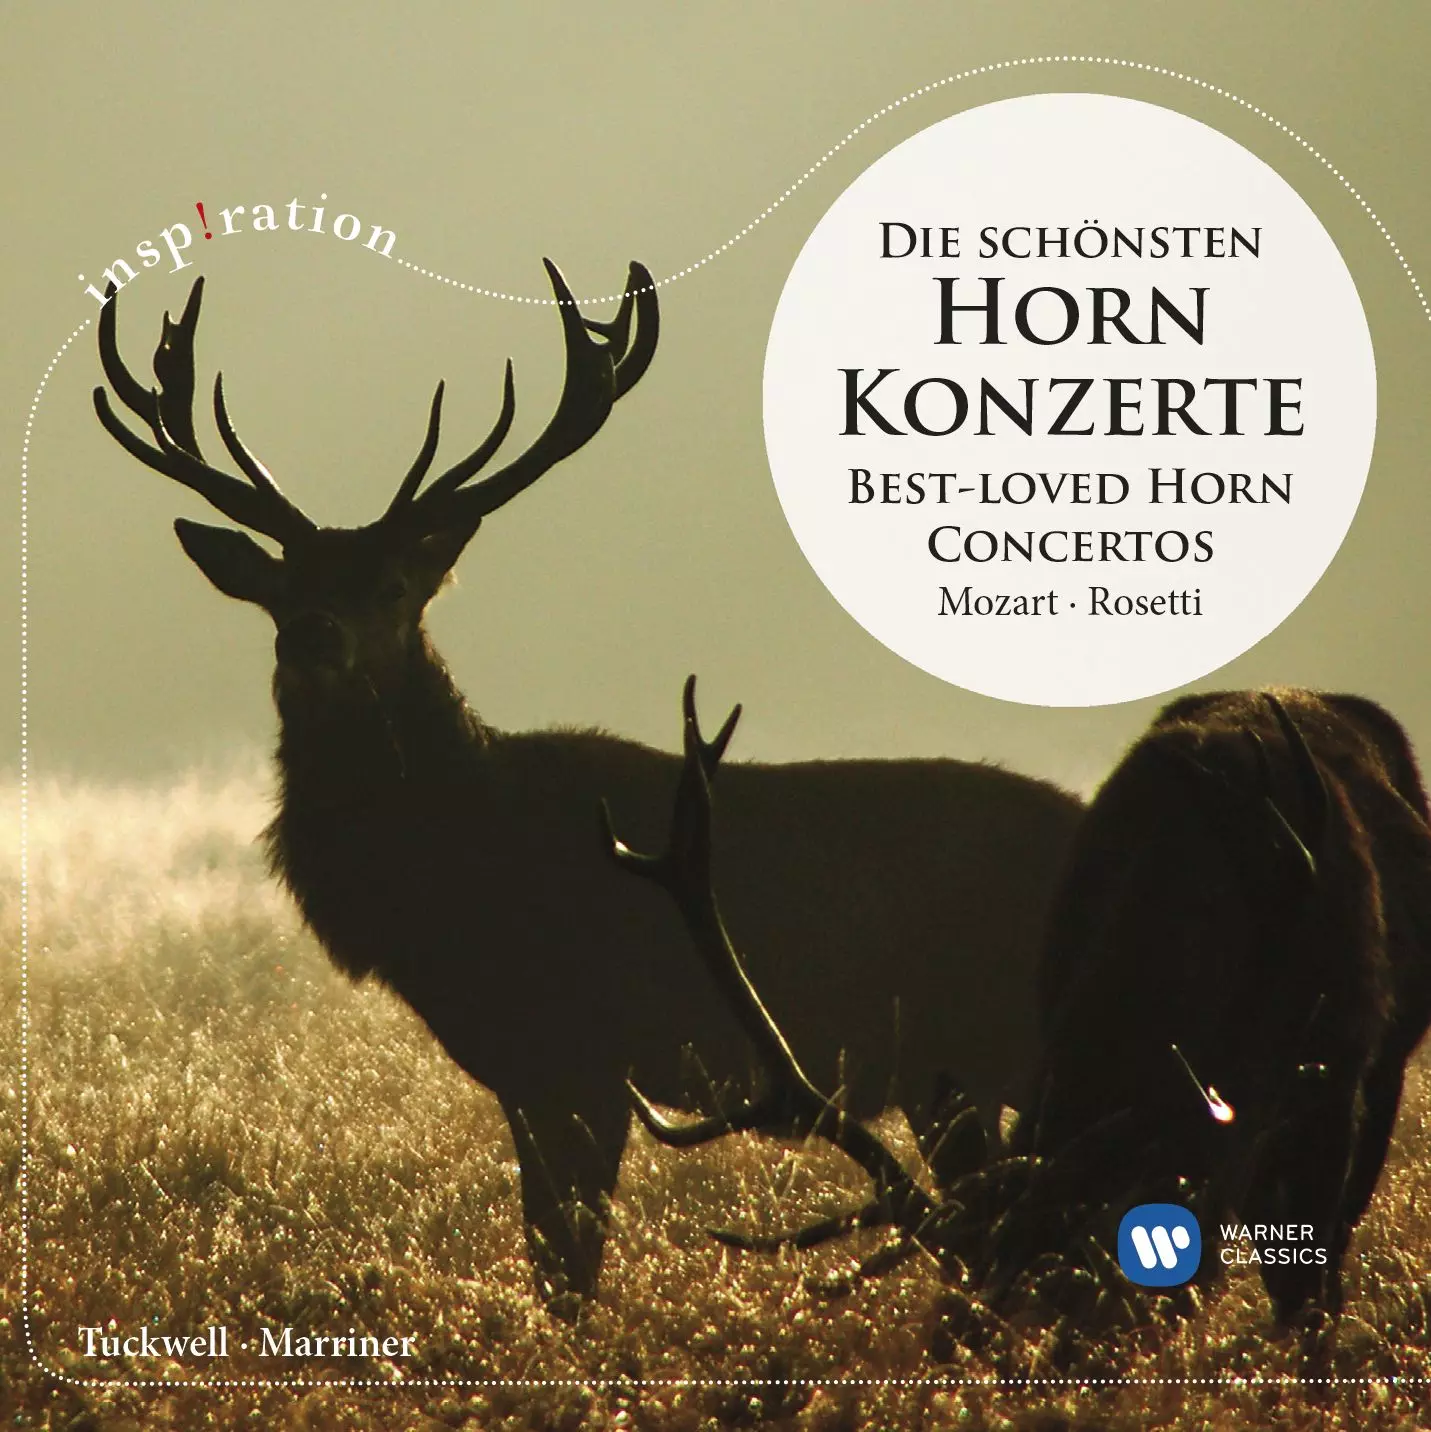 Best-Loved Horn Concertos